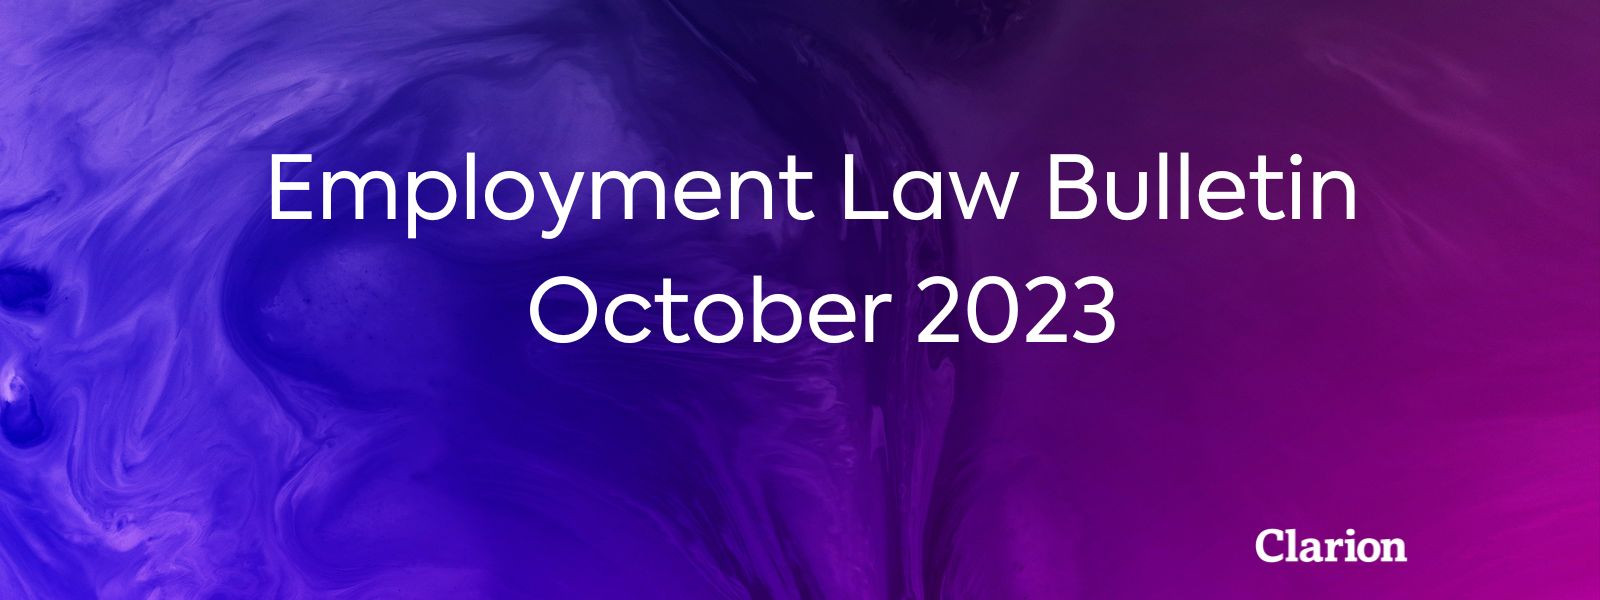 Employment Law Bulletin - October 2023